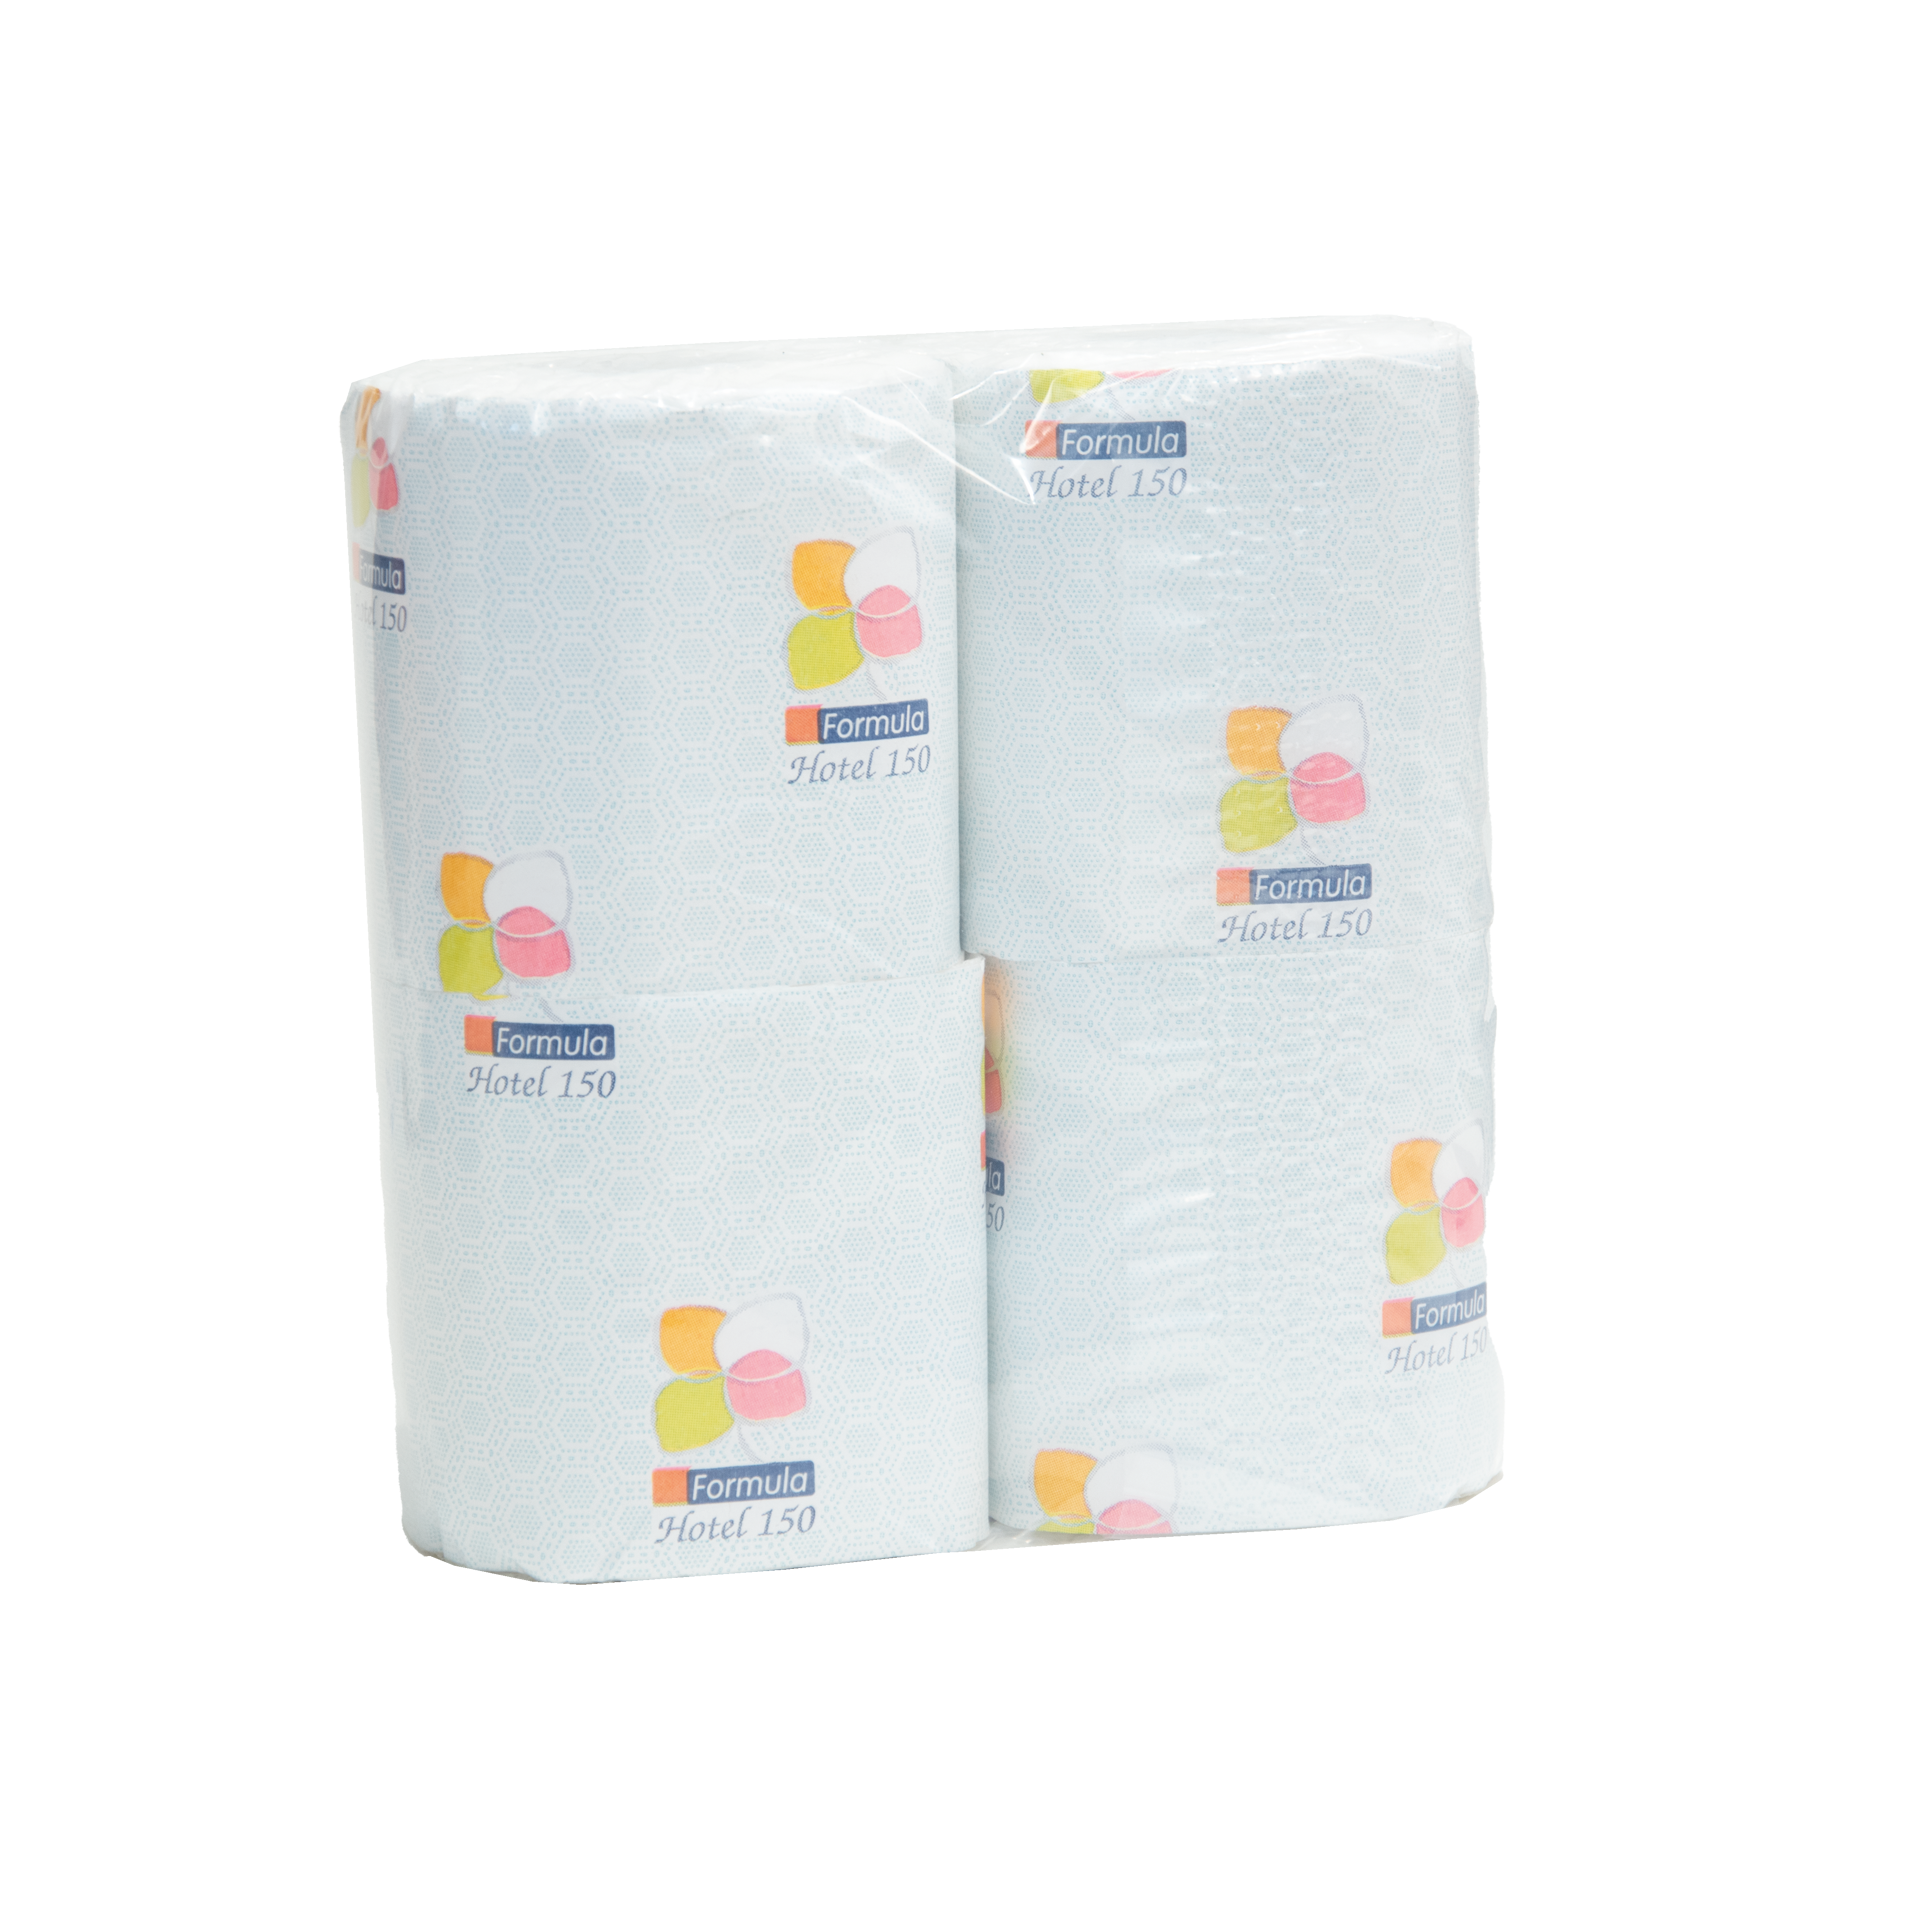 Toilettenpapier | Formula Hotel weiß 2lg. | mit Schleife 150 Abrisse/11,2 cm